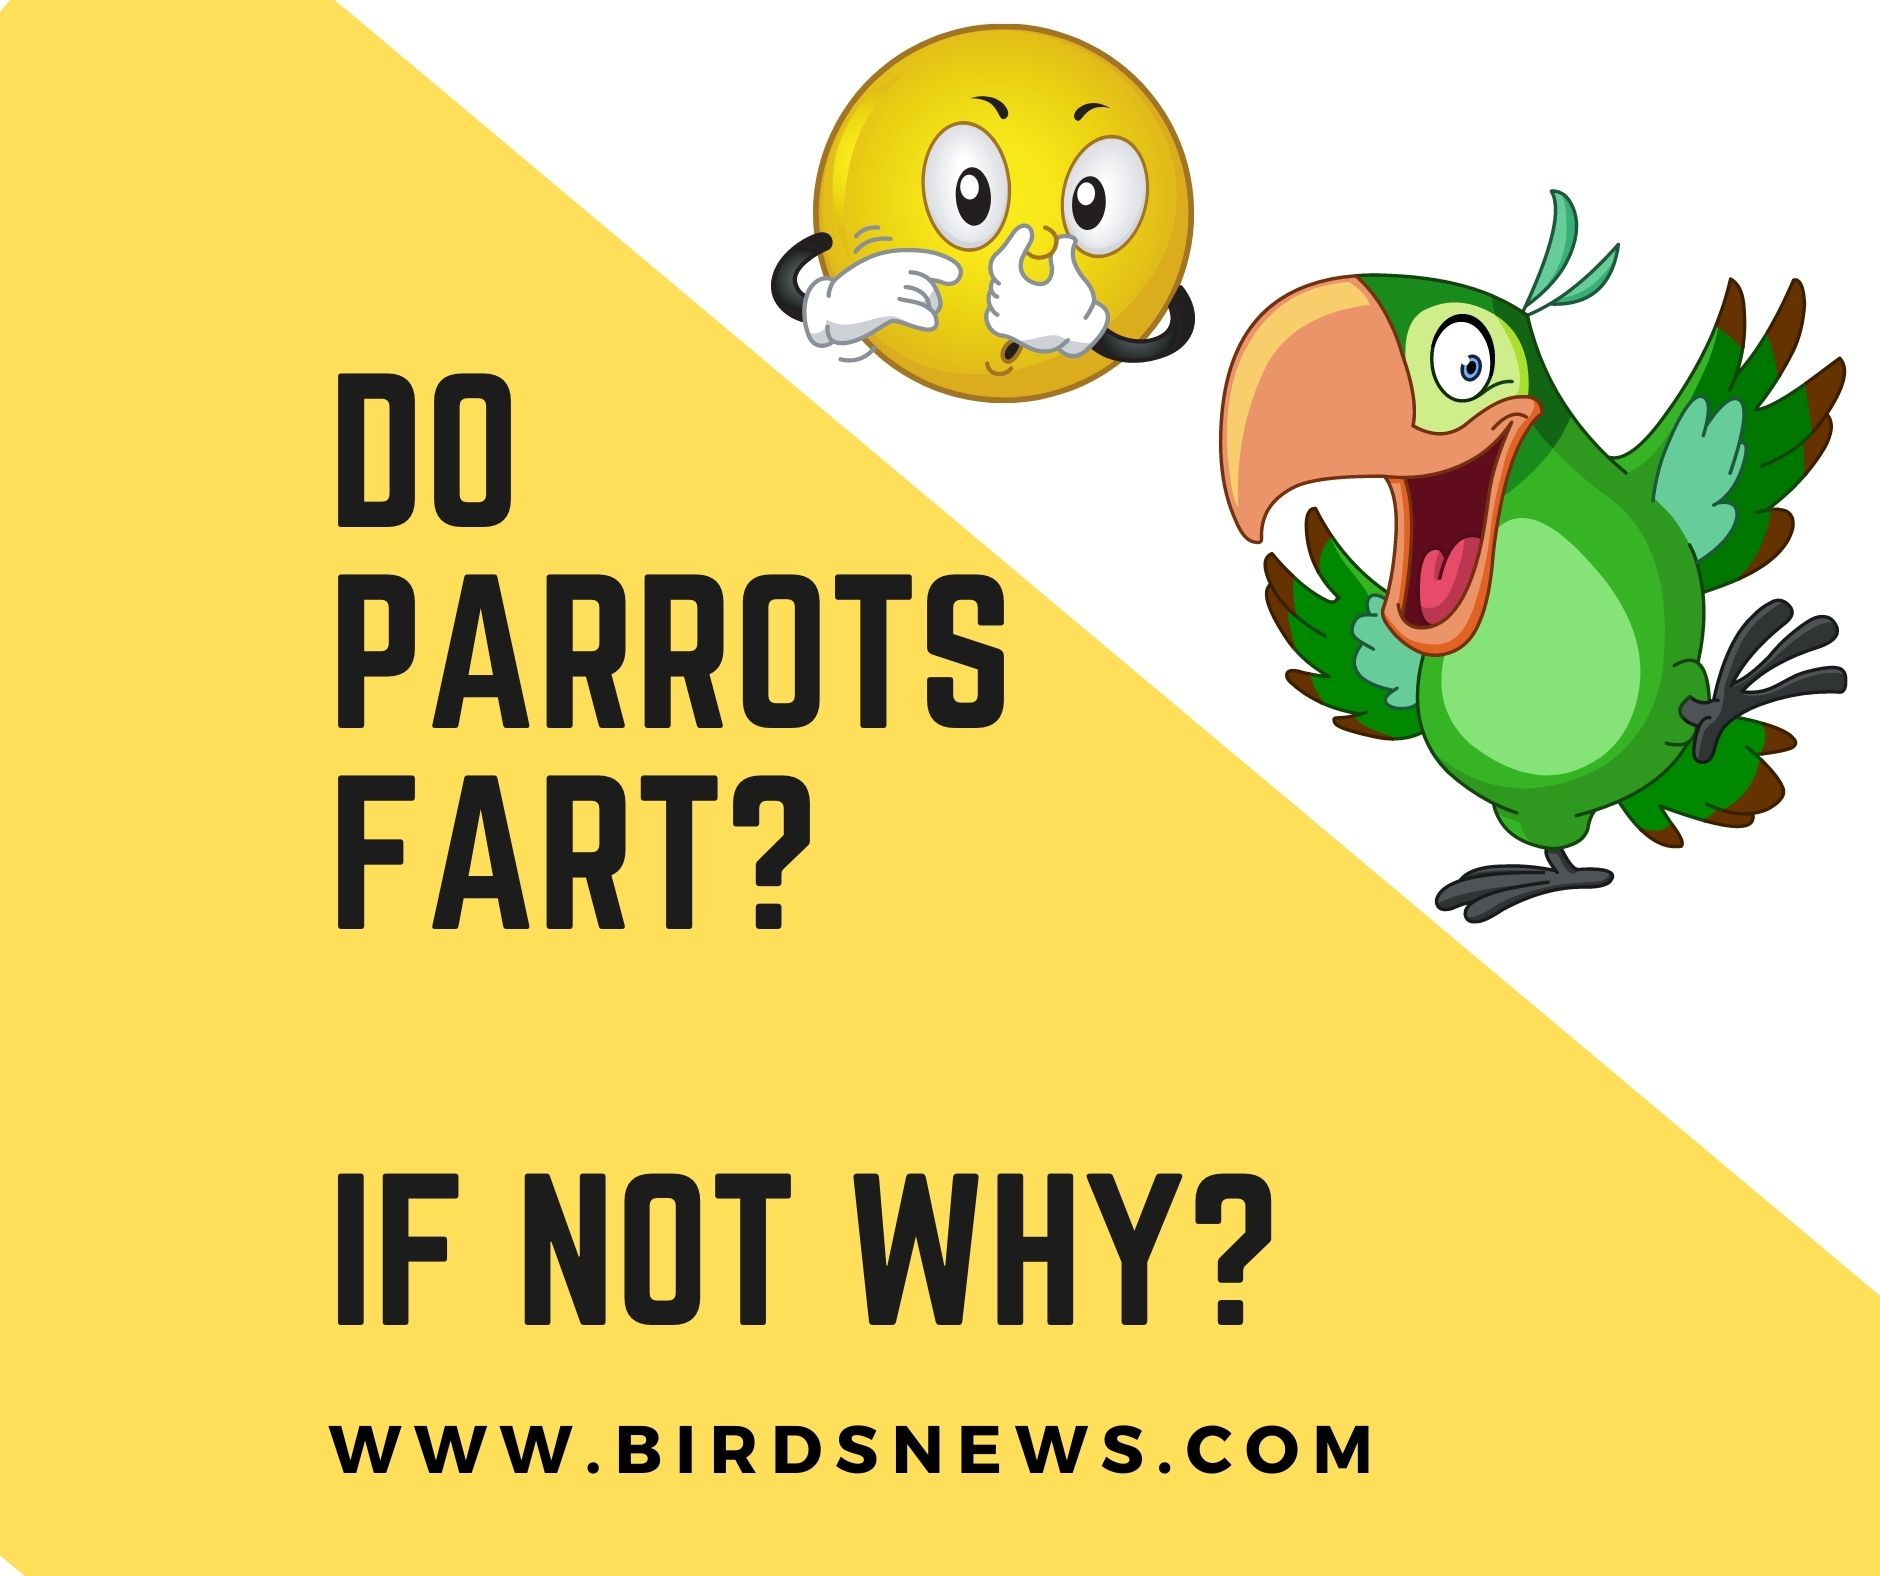 Do parrots fart?